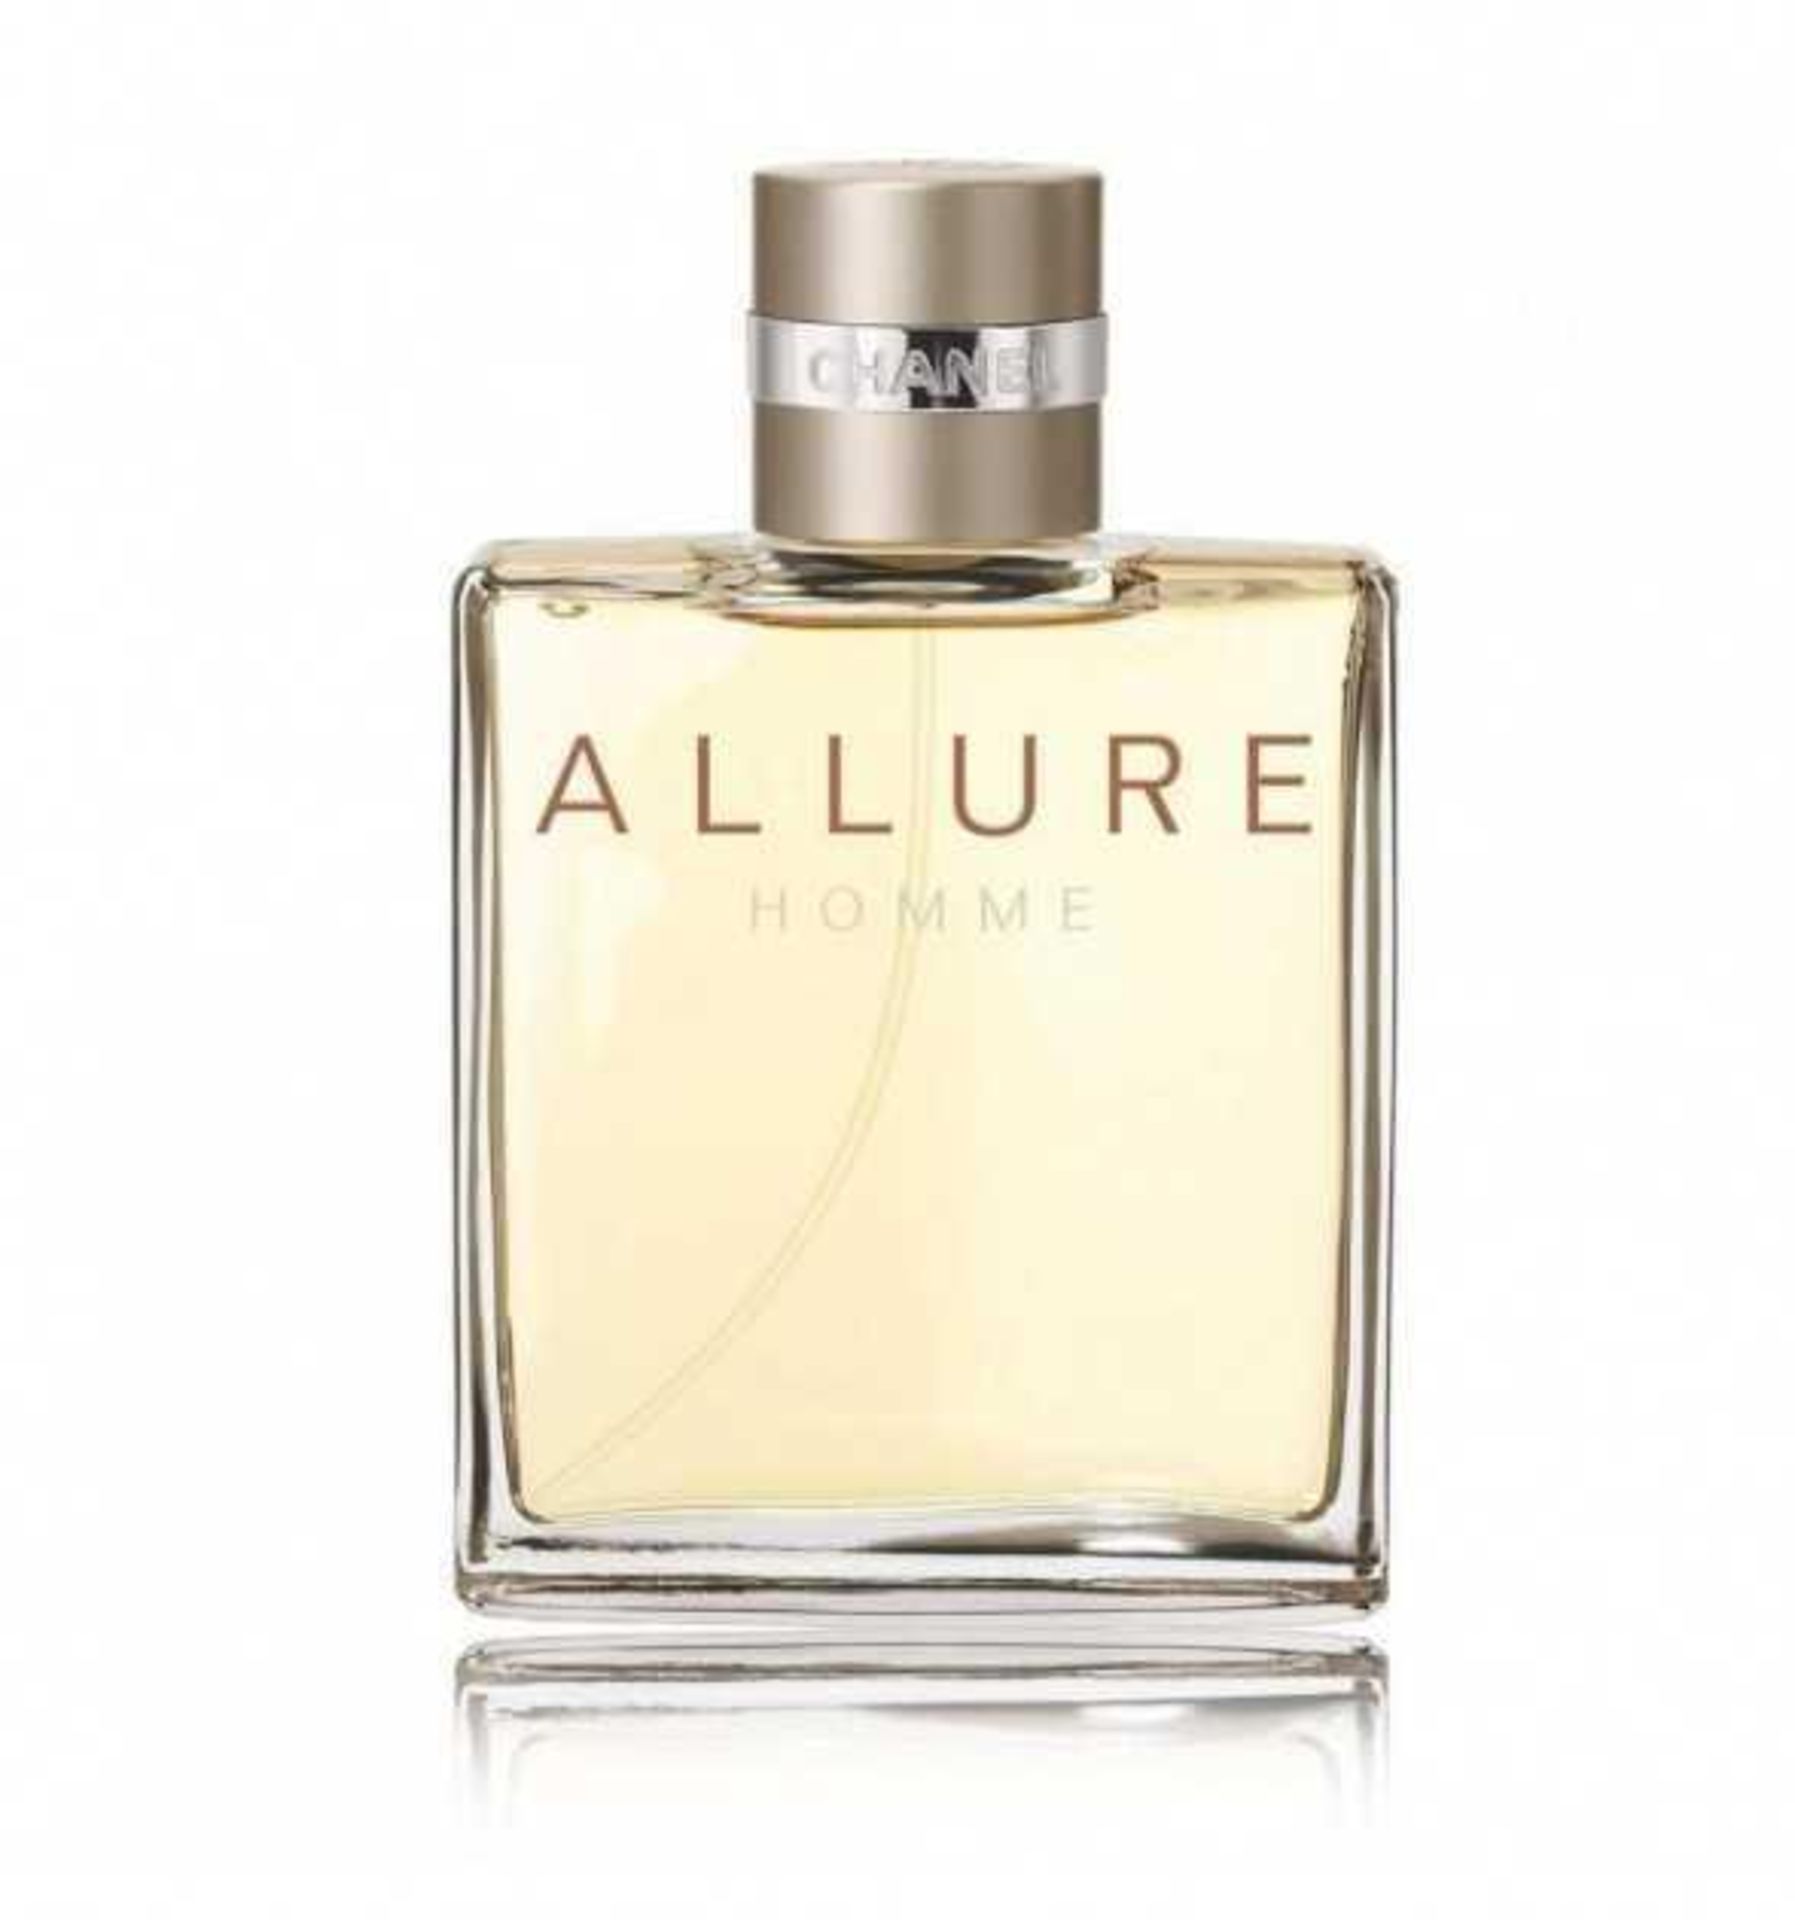 RRP £80 Boxed Full 100Ml Tester Bottle Of Chanel Allure Homme Edt Spray